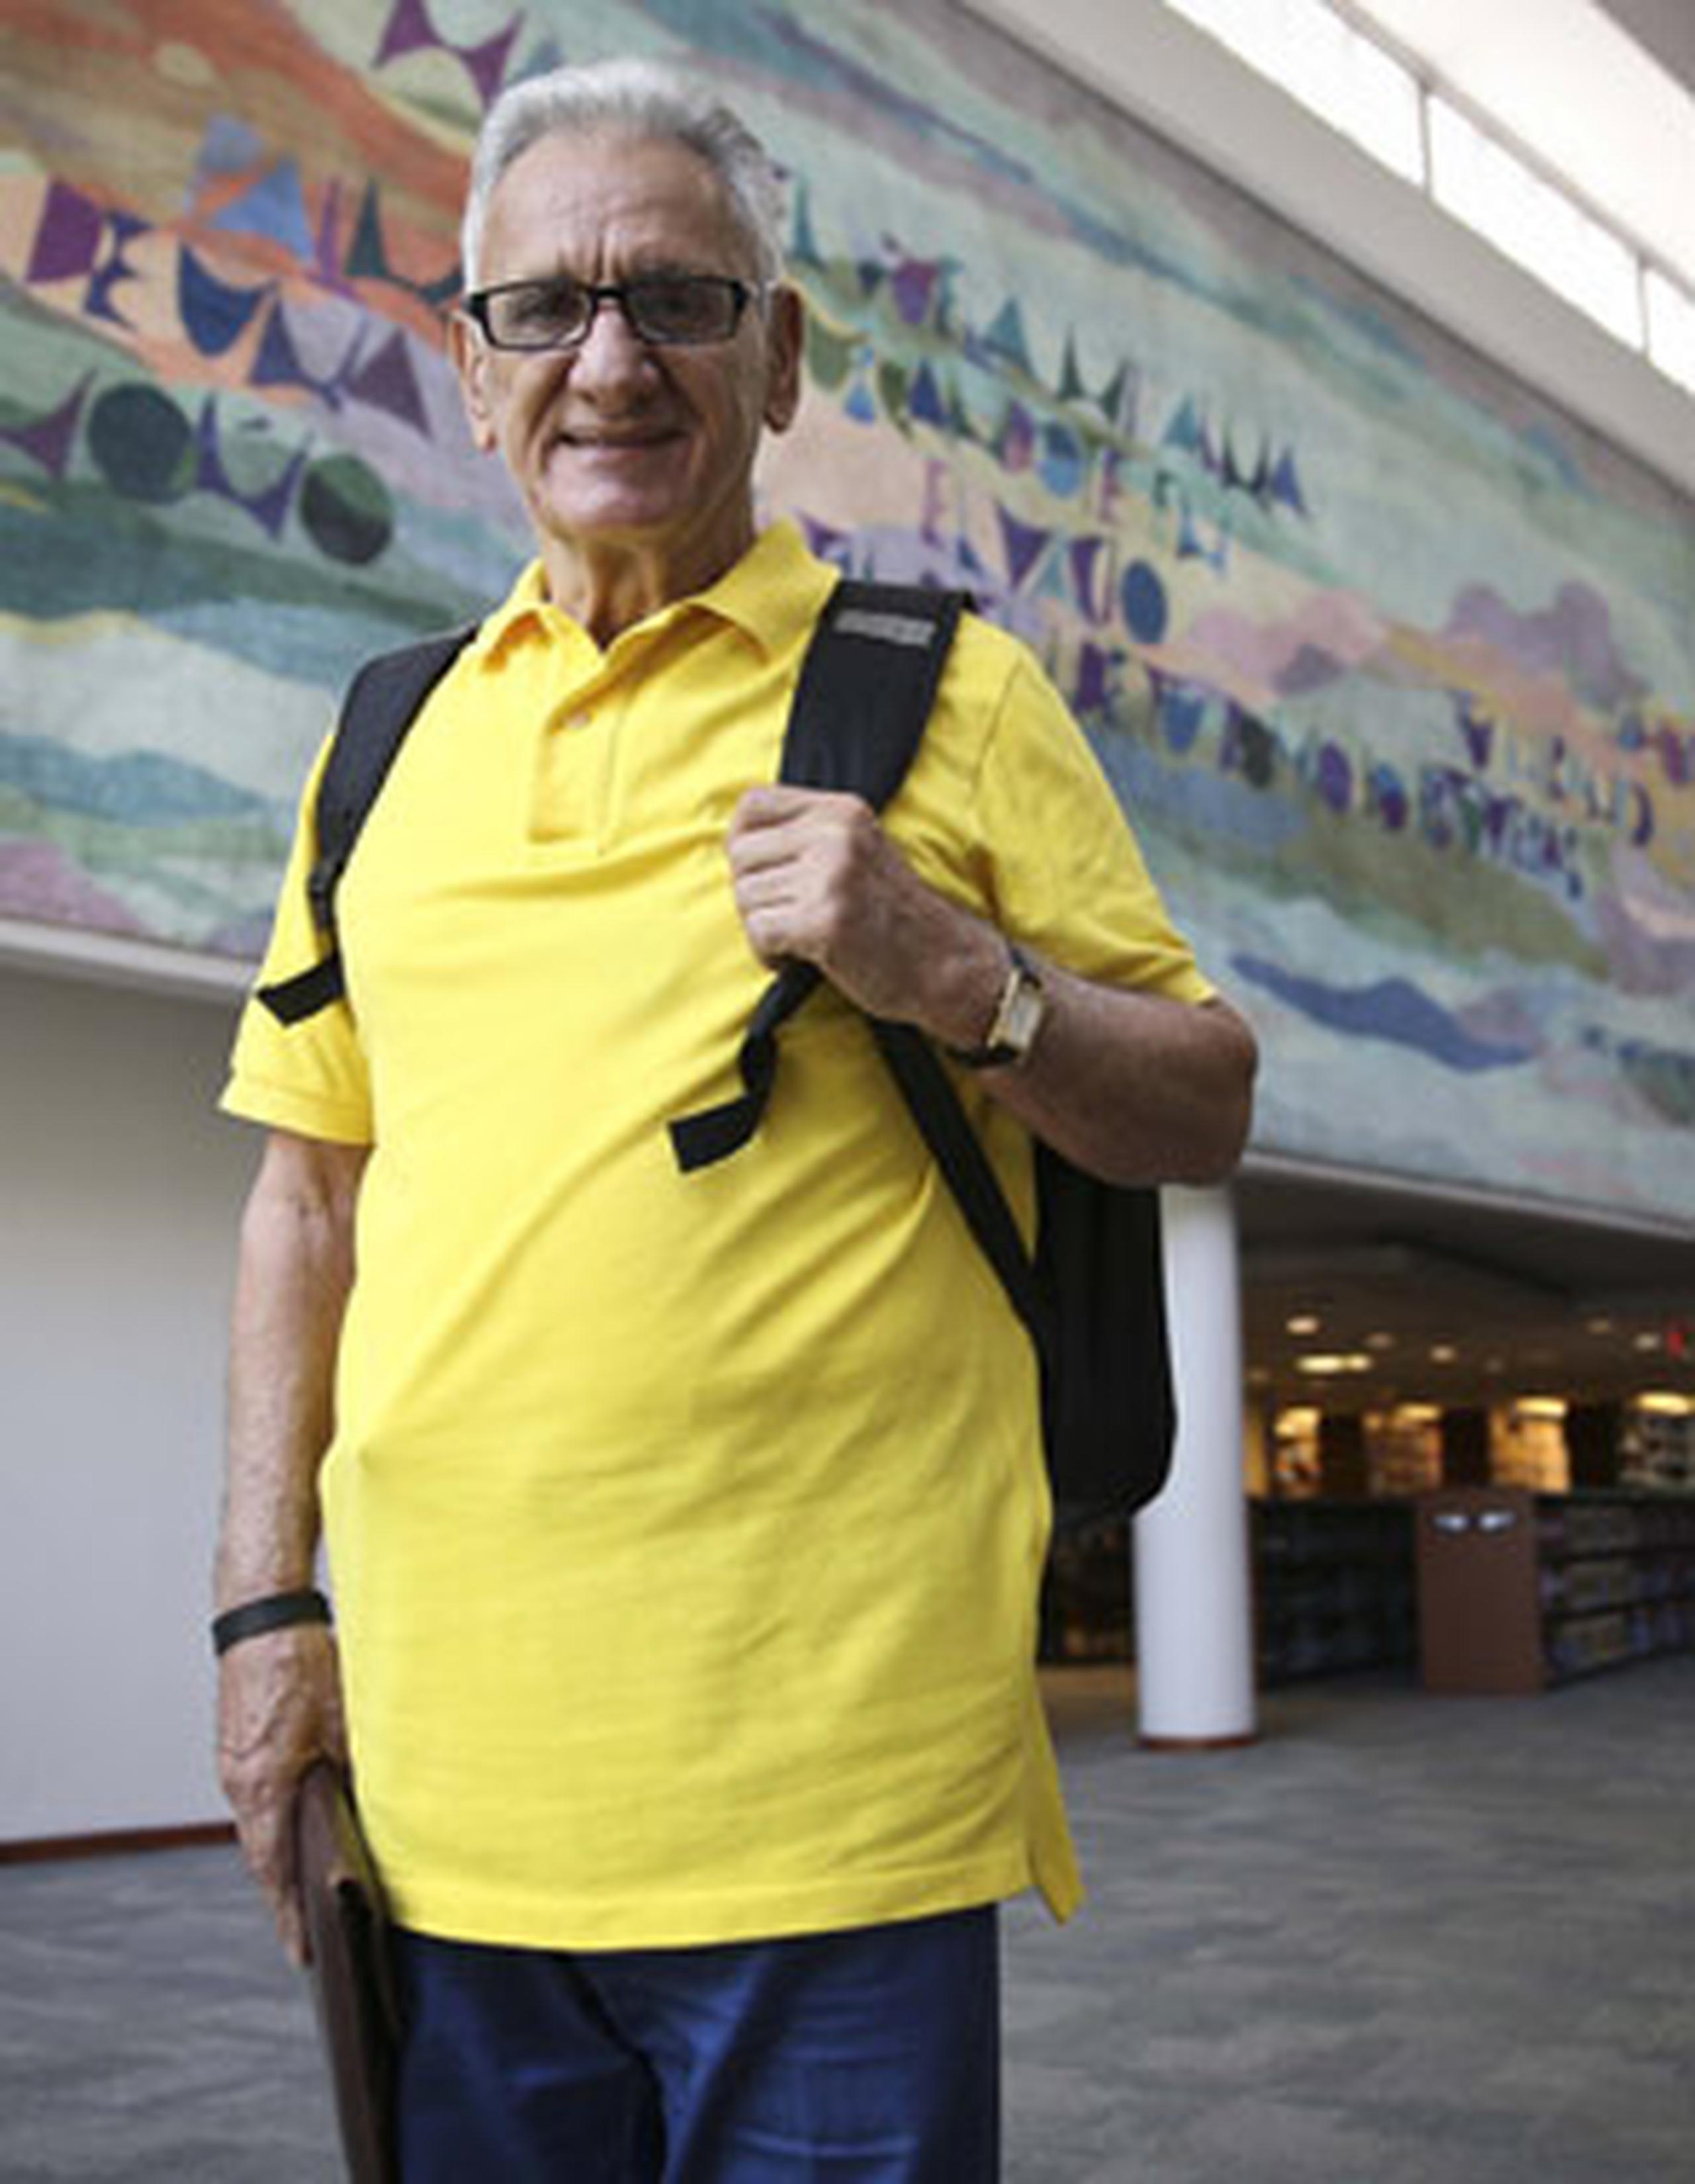 A sus 80 años, José L. Cases Rodríguez sigue firme en su afán de aprender y demostrar lo que es capaz de lograr. (wandaliz.vega@gfrmedia.com)